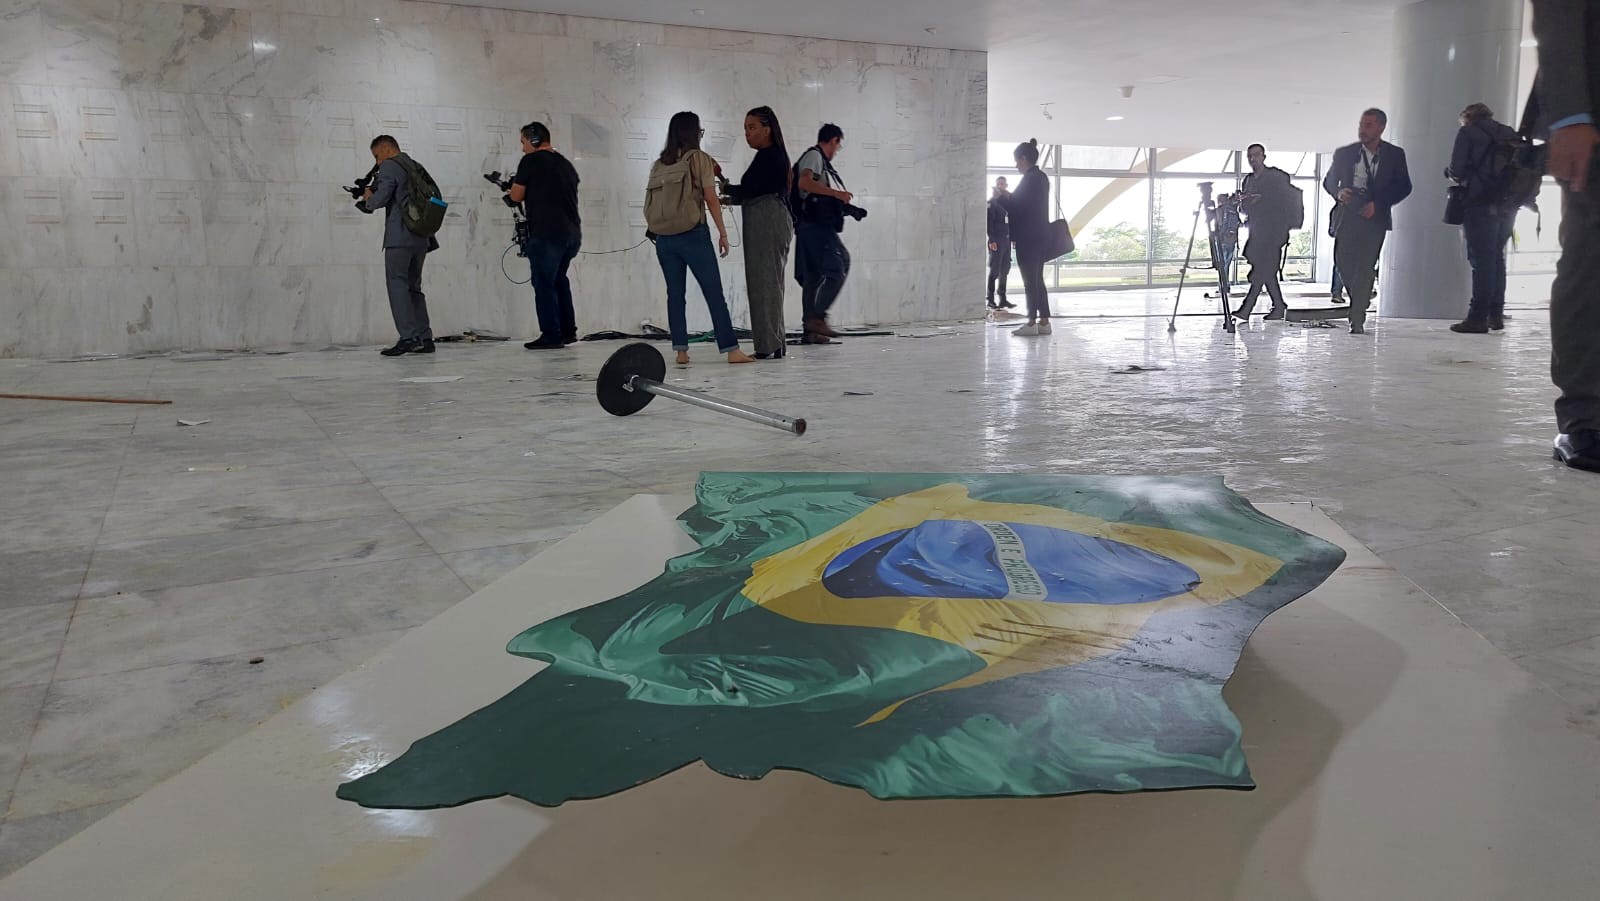 Área interna do Palácio do Planalto destruída — Foto: Bruno Góes/Agência O Globo